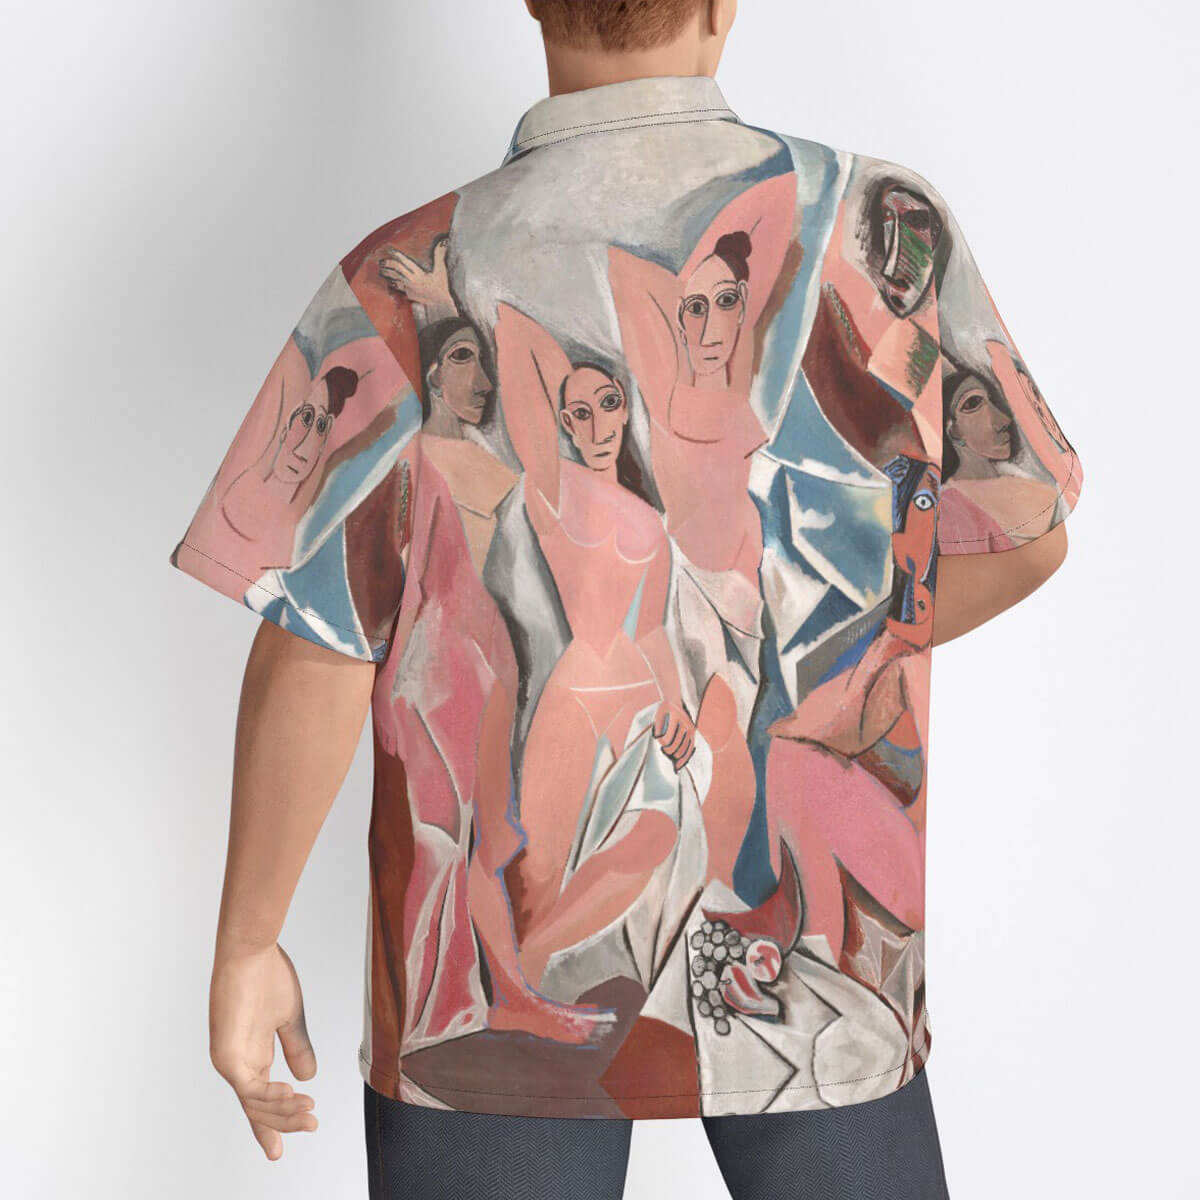 Bold Picasso Les Demoiselles d'Avignon print on comfortable shirt